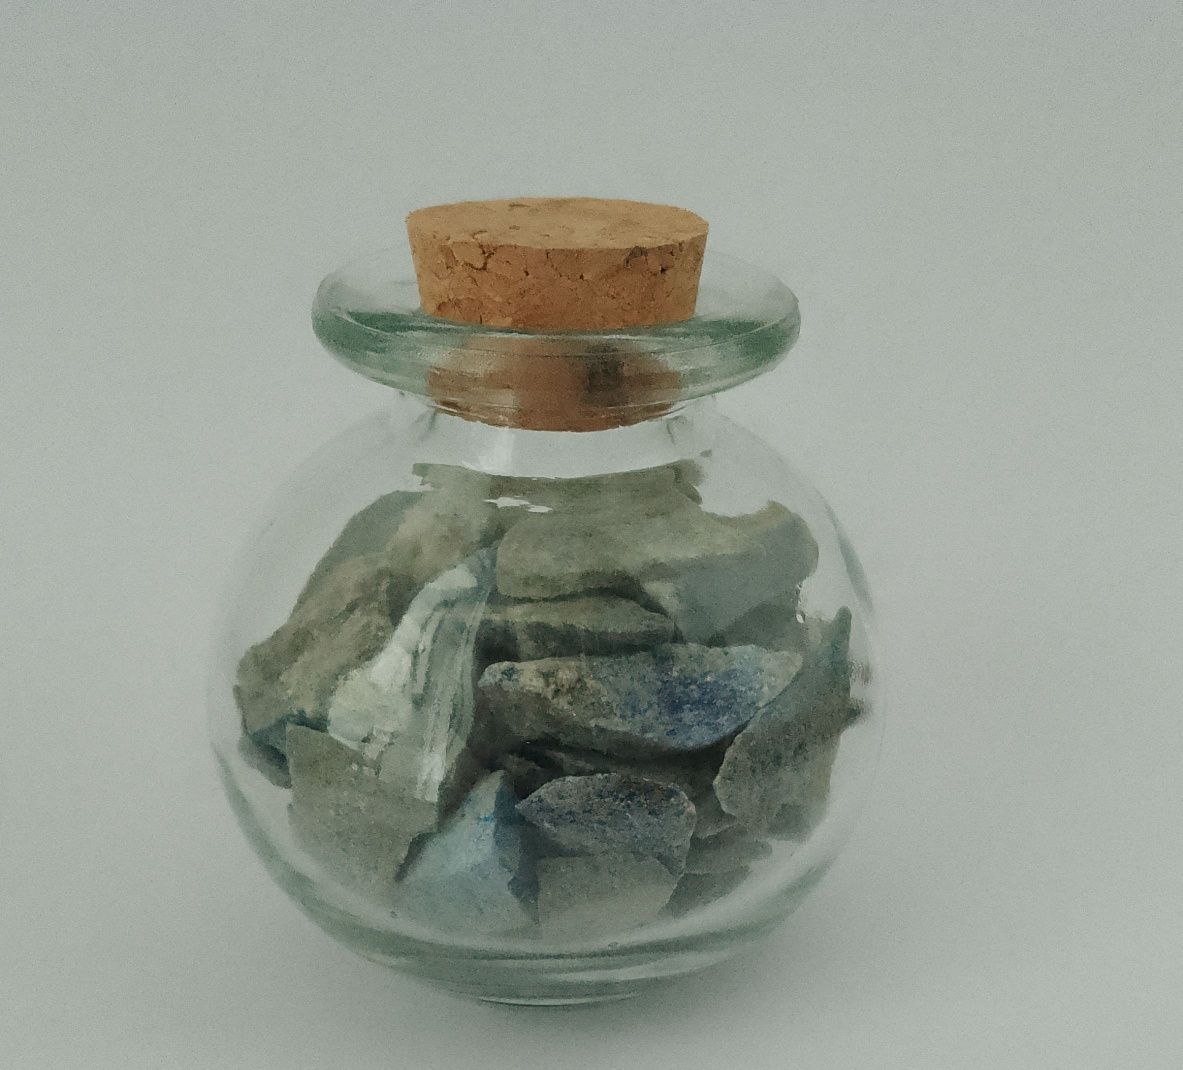 Lapis - lazuli minerał naturalny bryłki surowe w słoiczku 85g